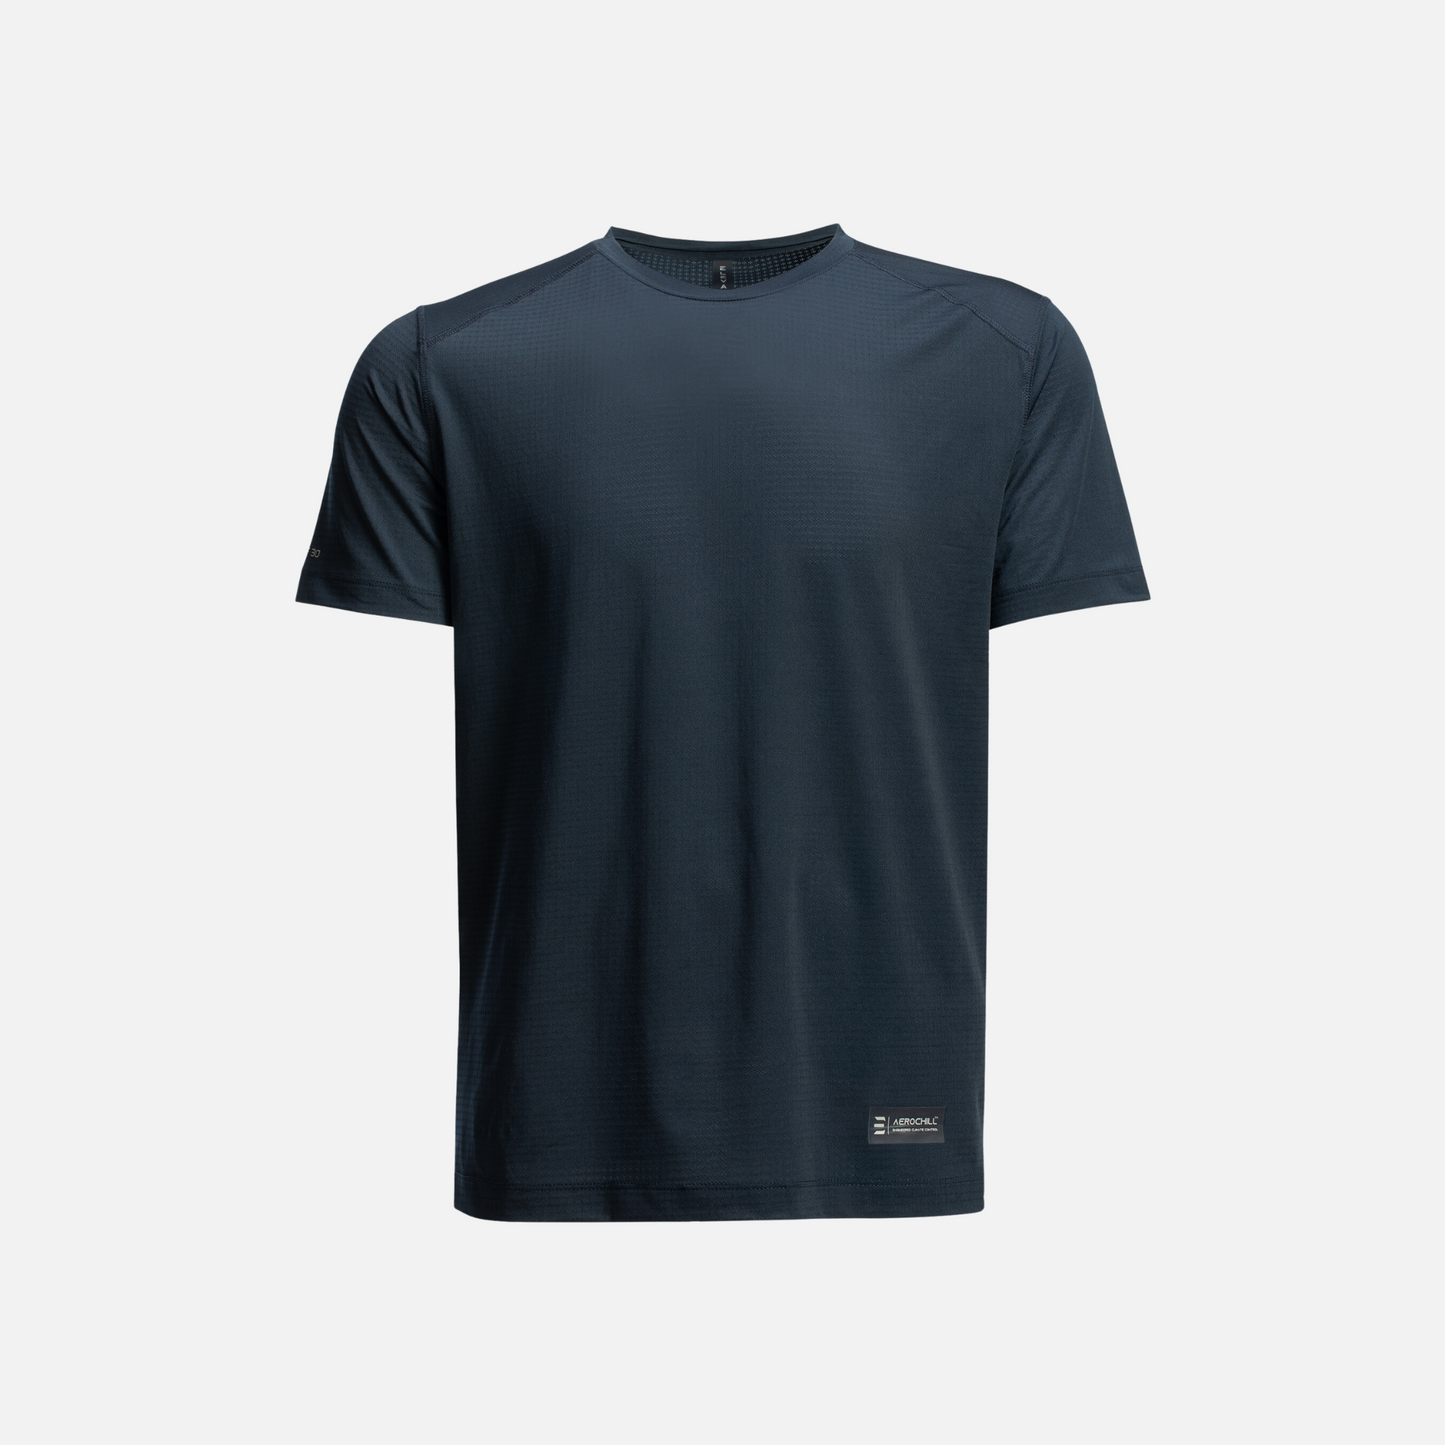 Aerochill Active T-Shirt